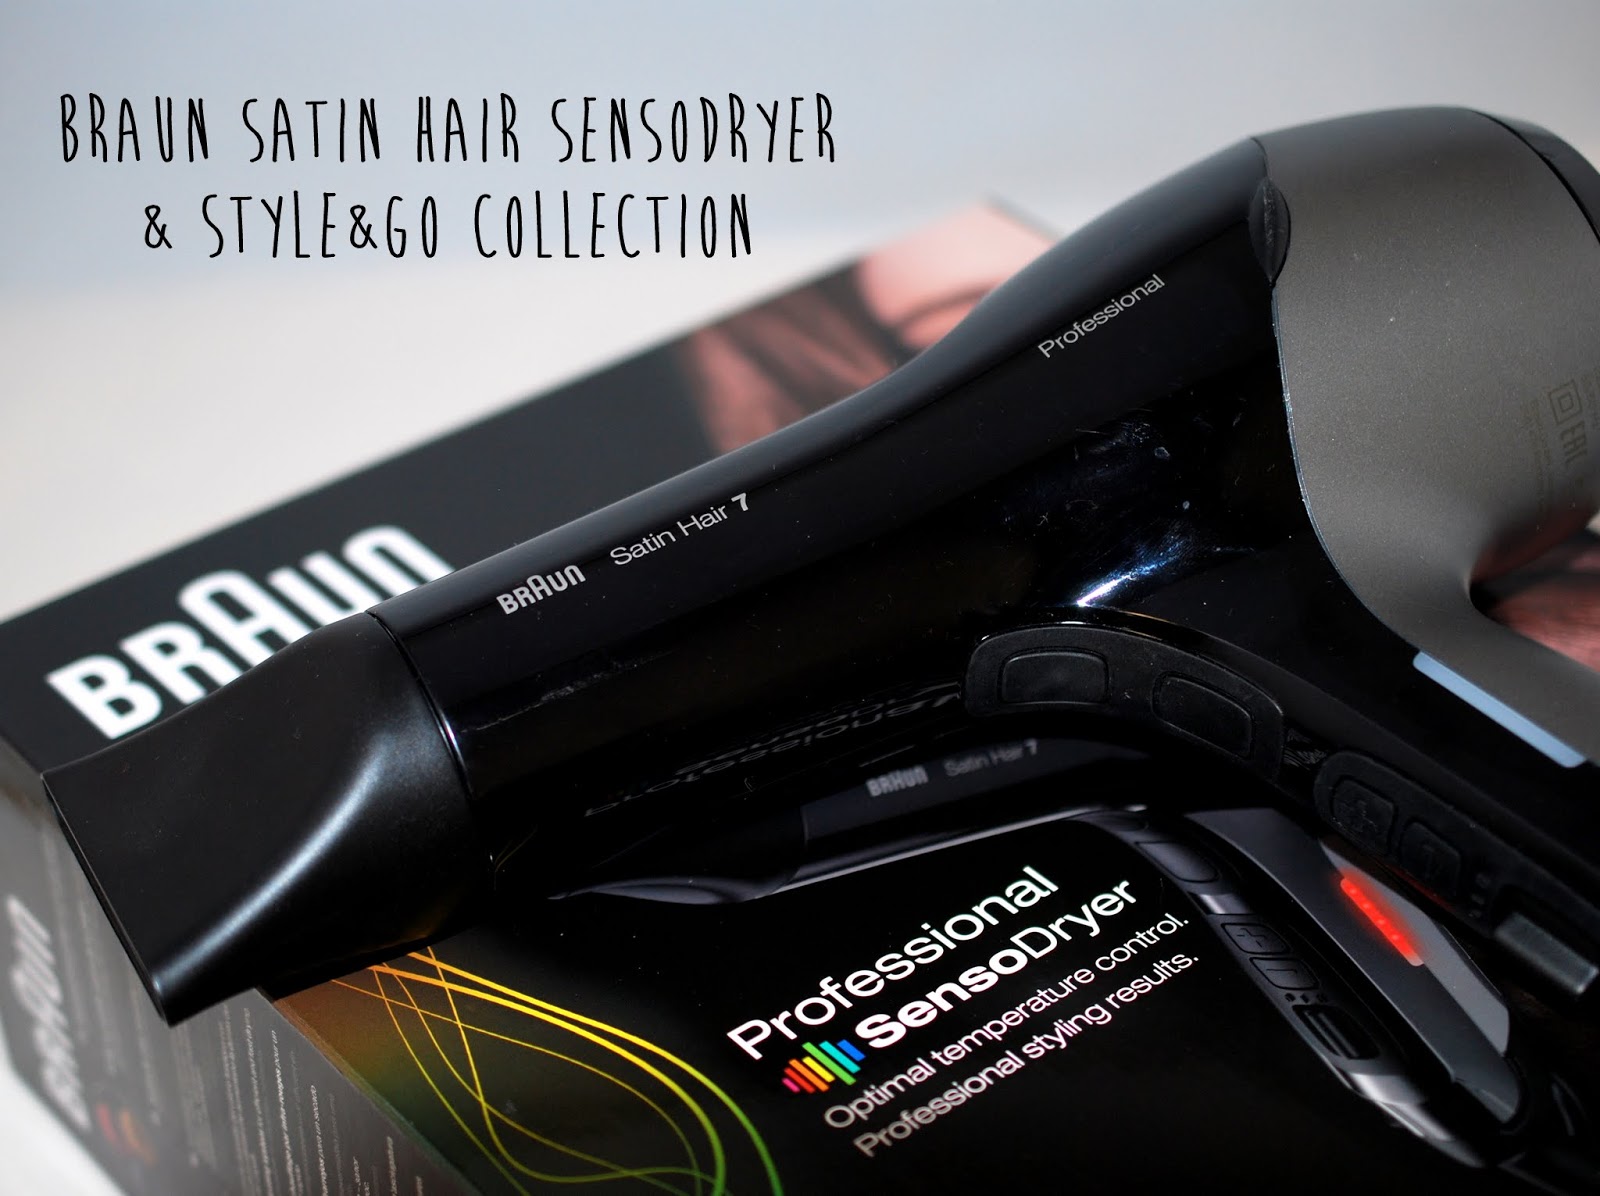 Hair Haarpflege} und 7 sunshine I need von - Satin (Sponsored) Collection Style&Go SensoDryer Professional Braun